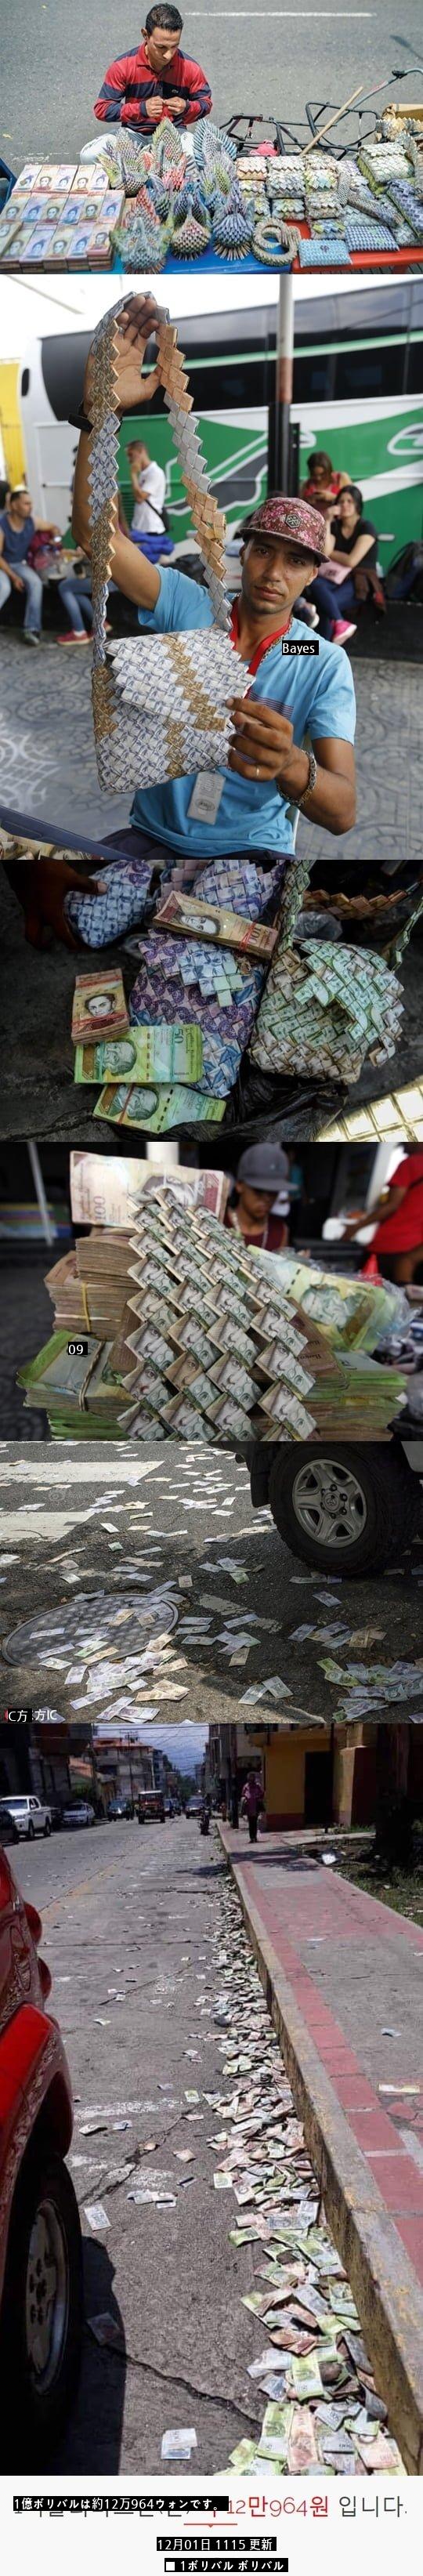 ベネズエラ通貨価値の近況 コjpg